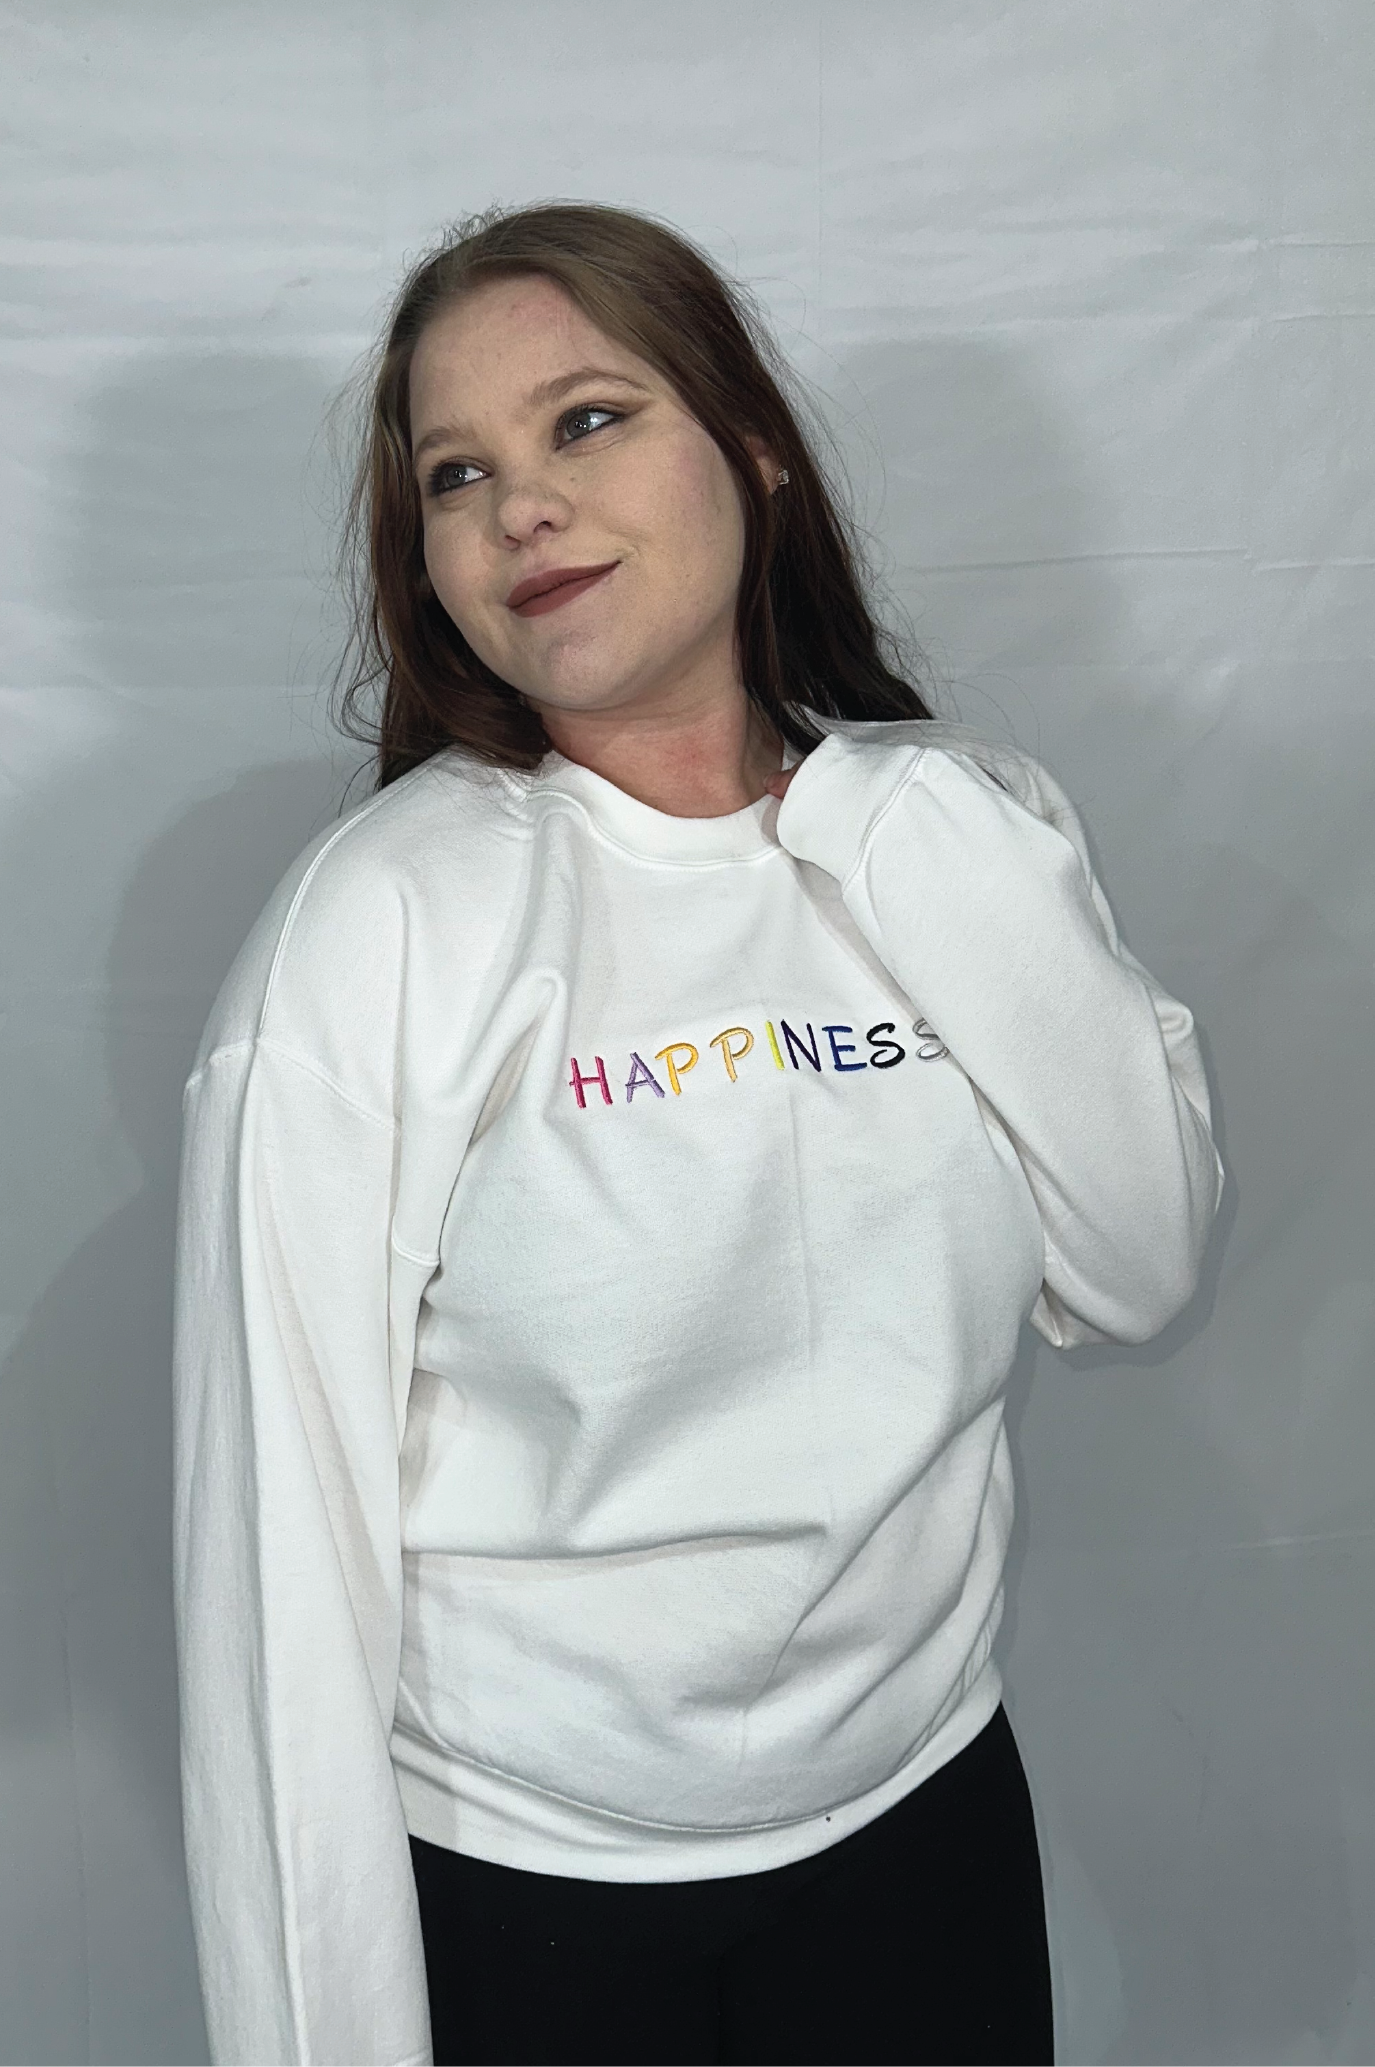 Happiness Crewneck Sweatshirt